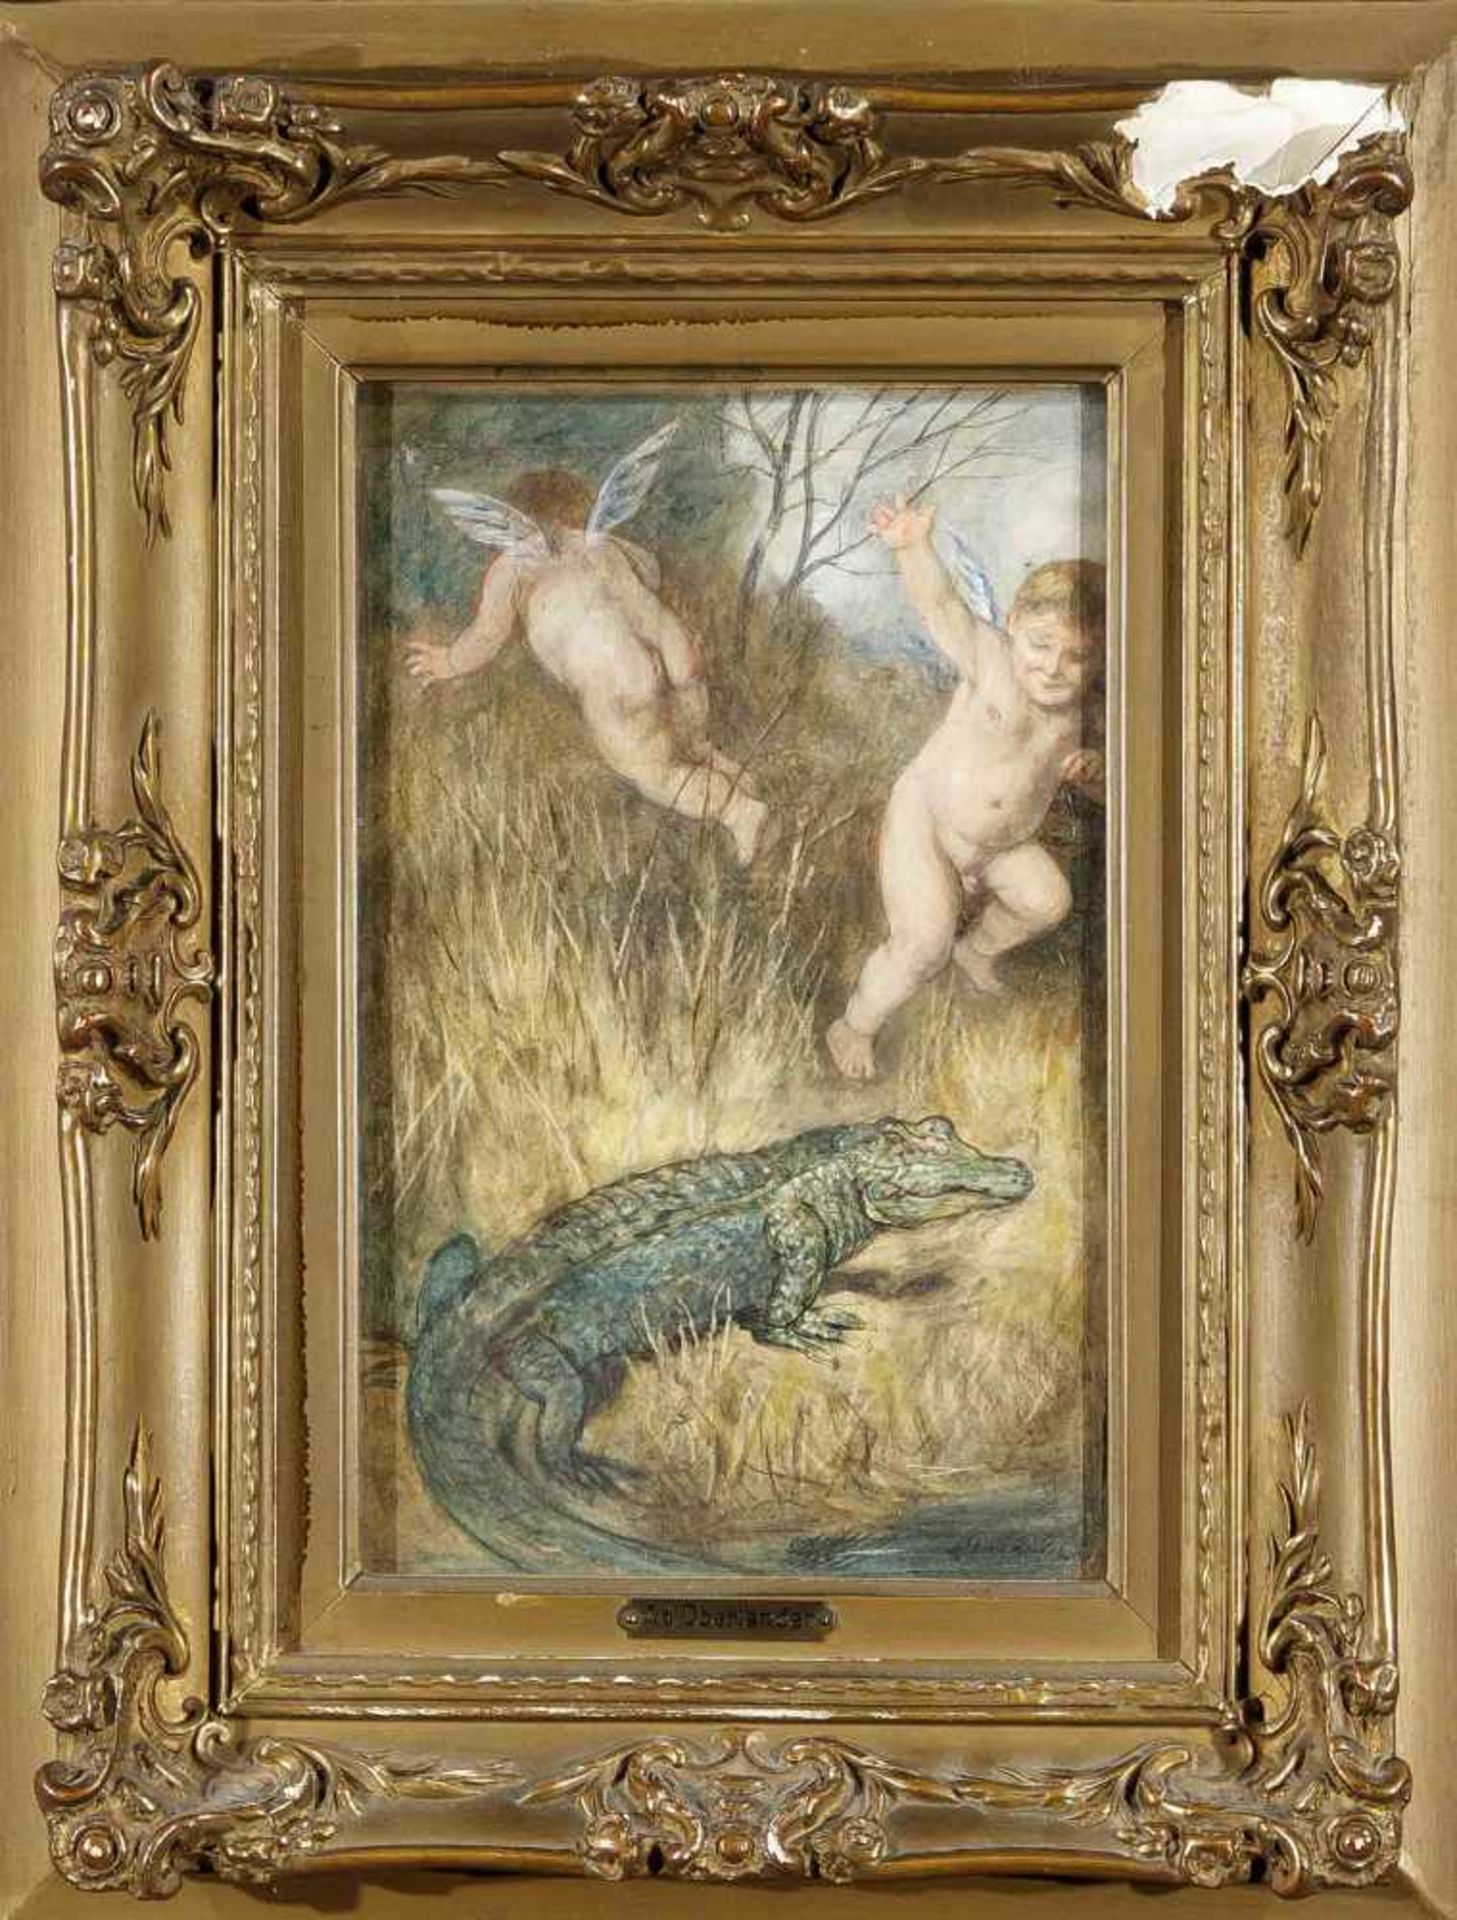 Adolf Oberländer (1845-1923), Putten mit Krokodil, humoristische Szene des